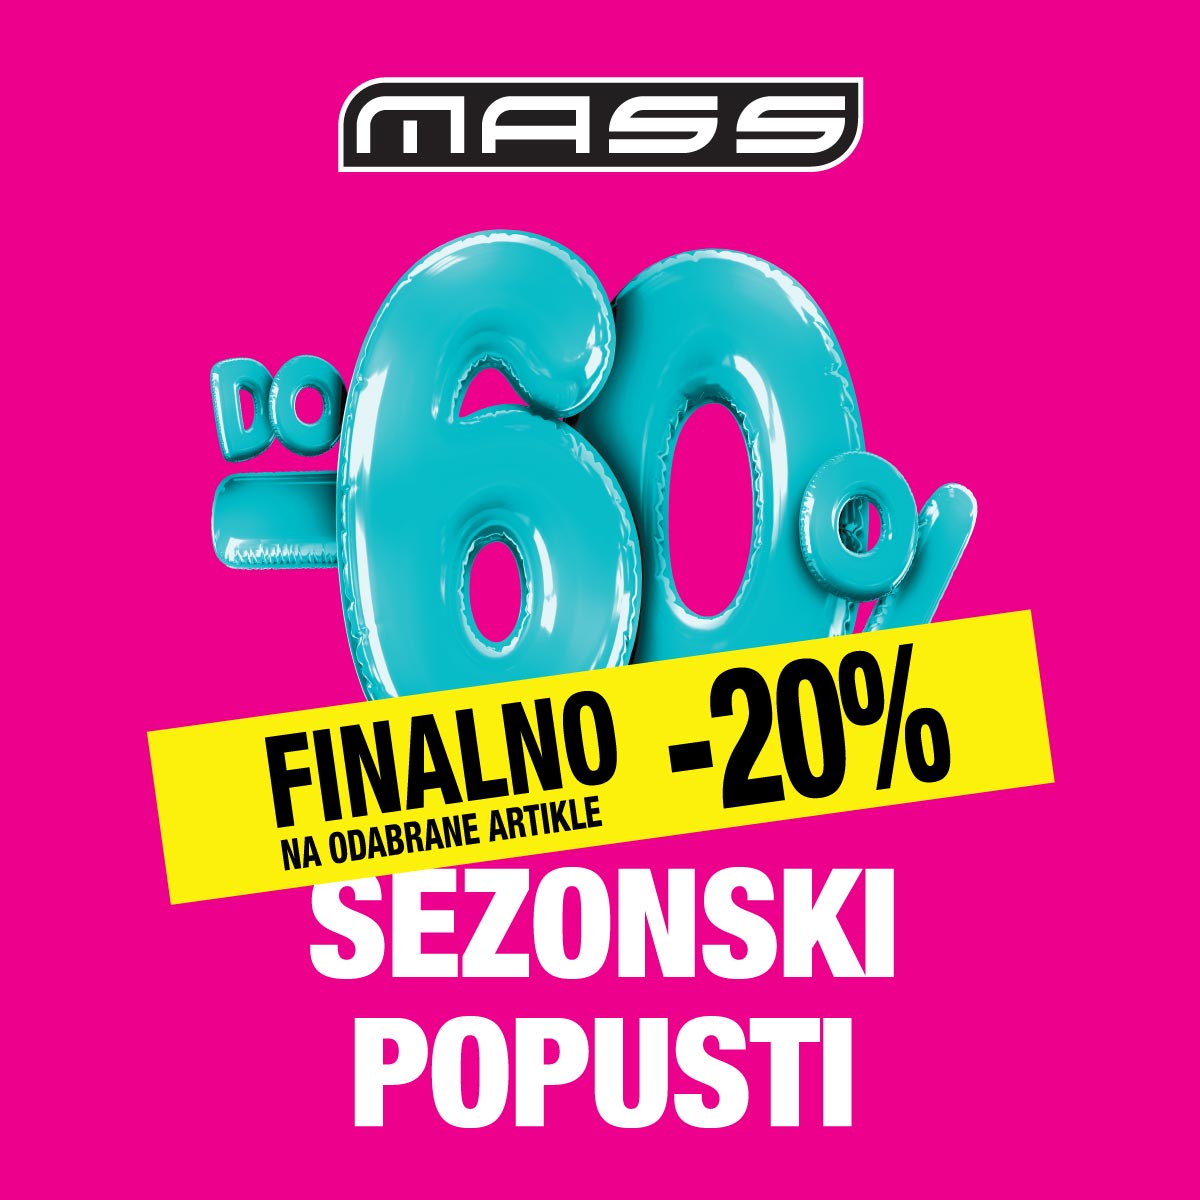 Banner_Mass_SEZONSKI-POPUSTI_CRO_Finalno-20%_1200x1200px_logo